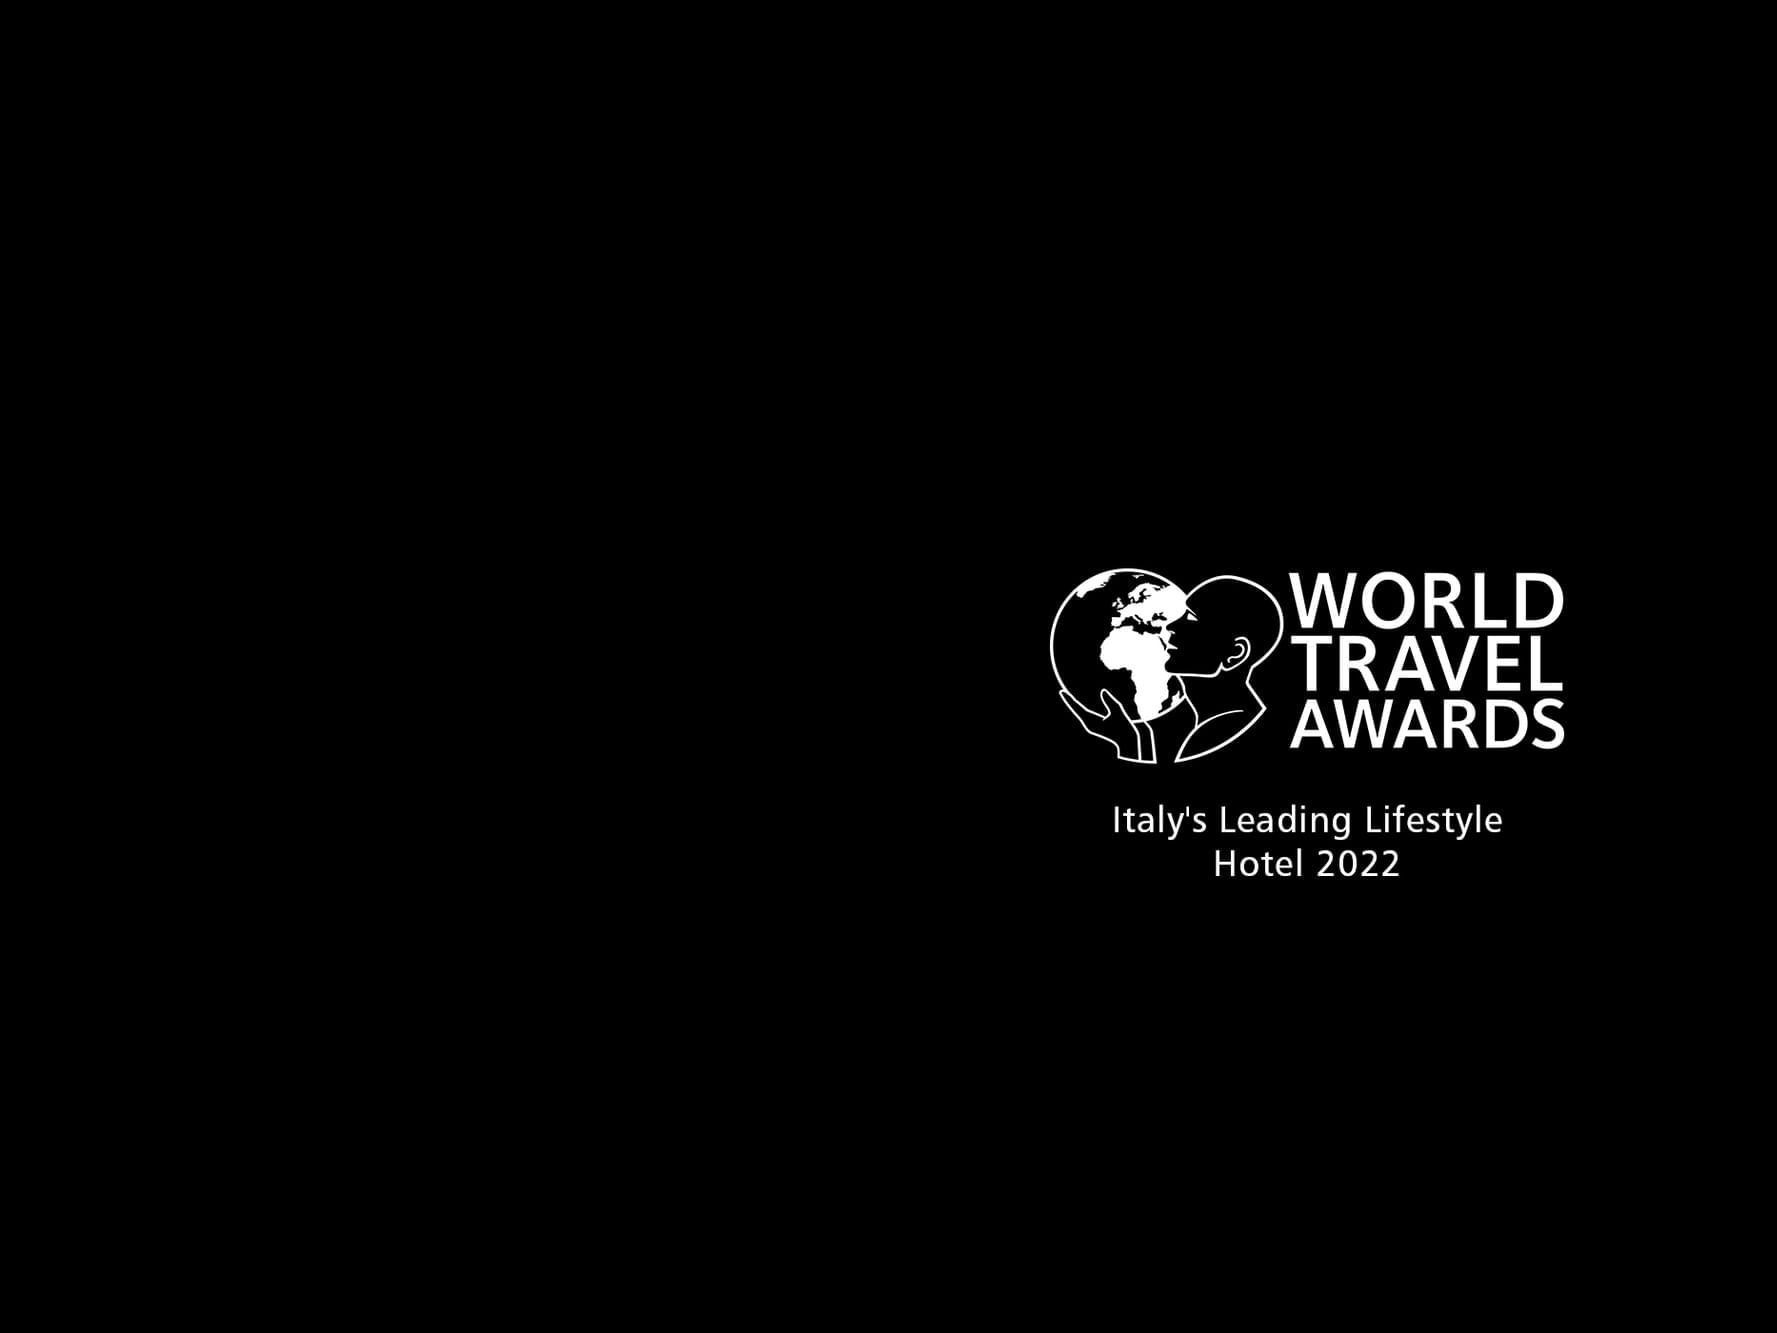 World Travel Awards: Italy’s Leading Lifestyle Hotel 2022